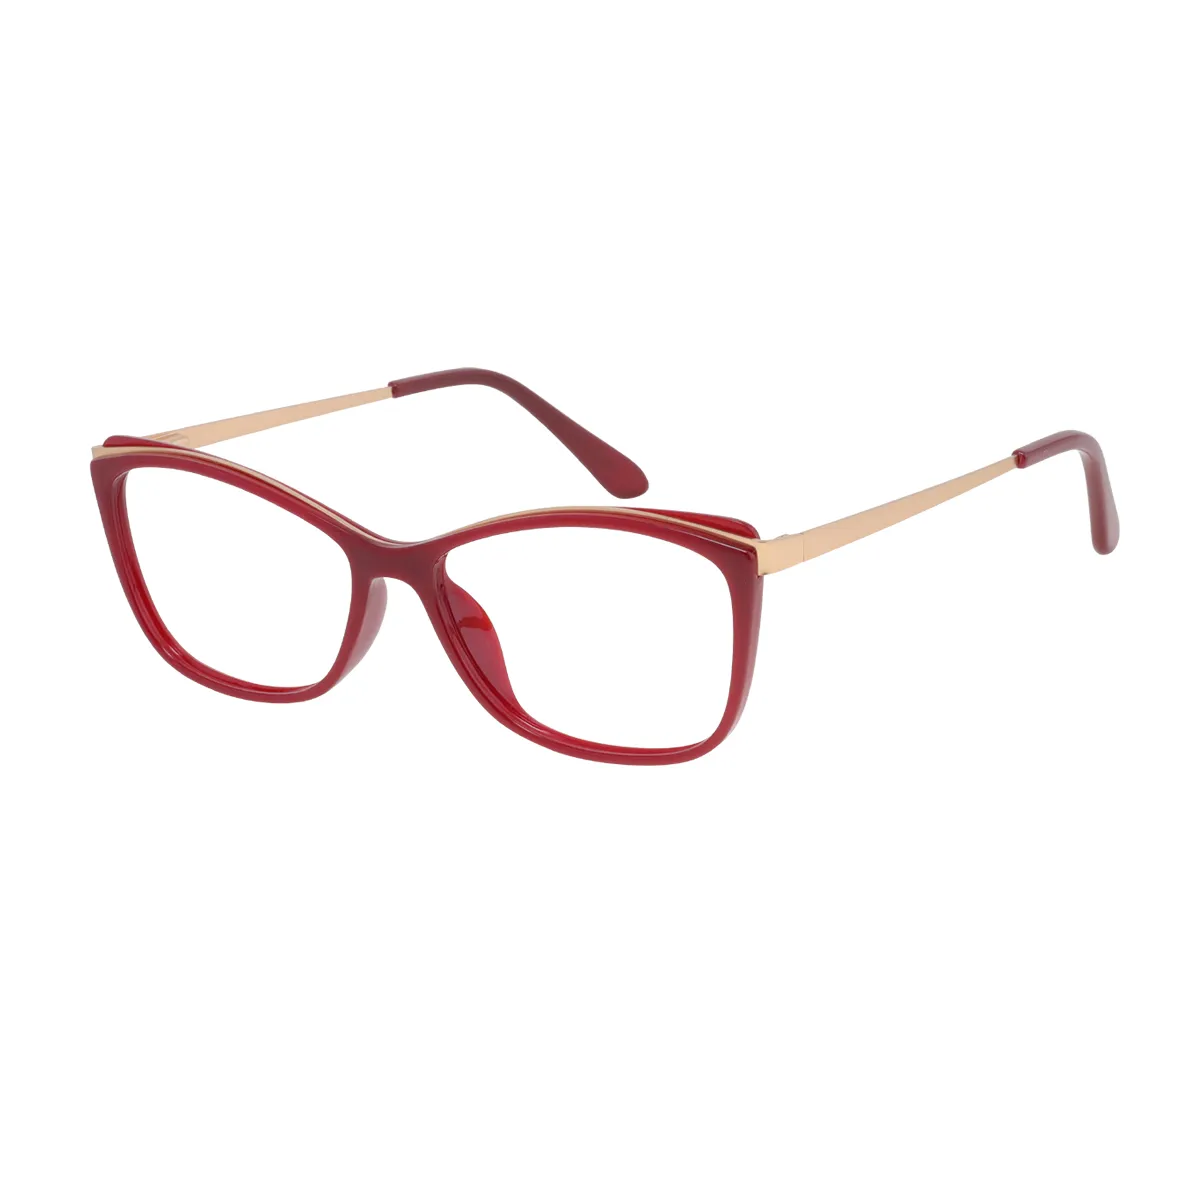 Avice - Cat-eye Red Glasses for Women